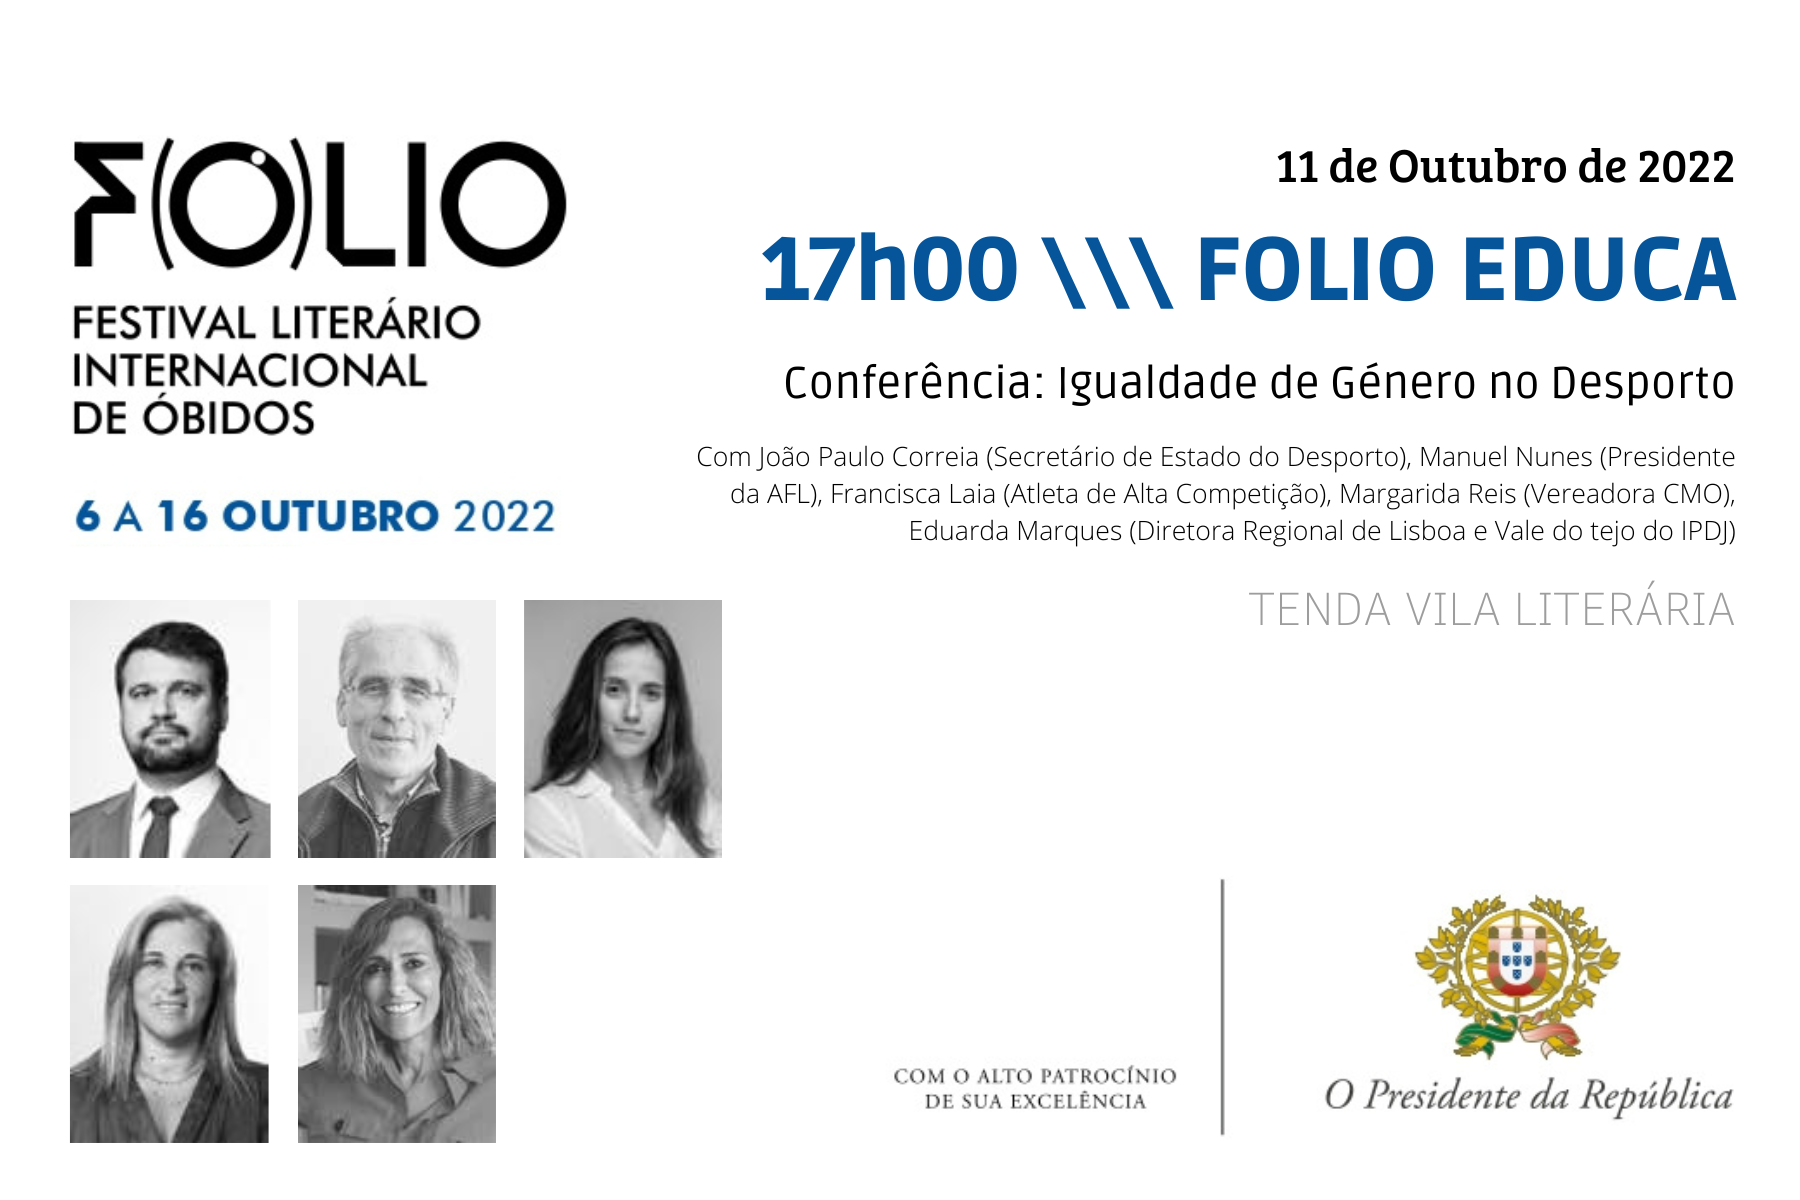 Manuel Nunes (Presidente AF Leiria) presente no FOLIO 2022 em Óbidos